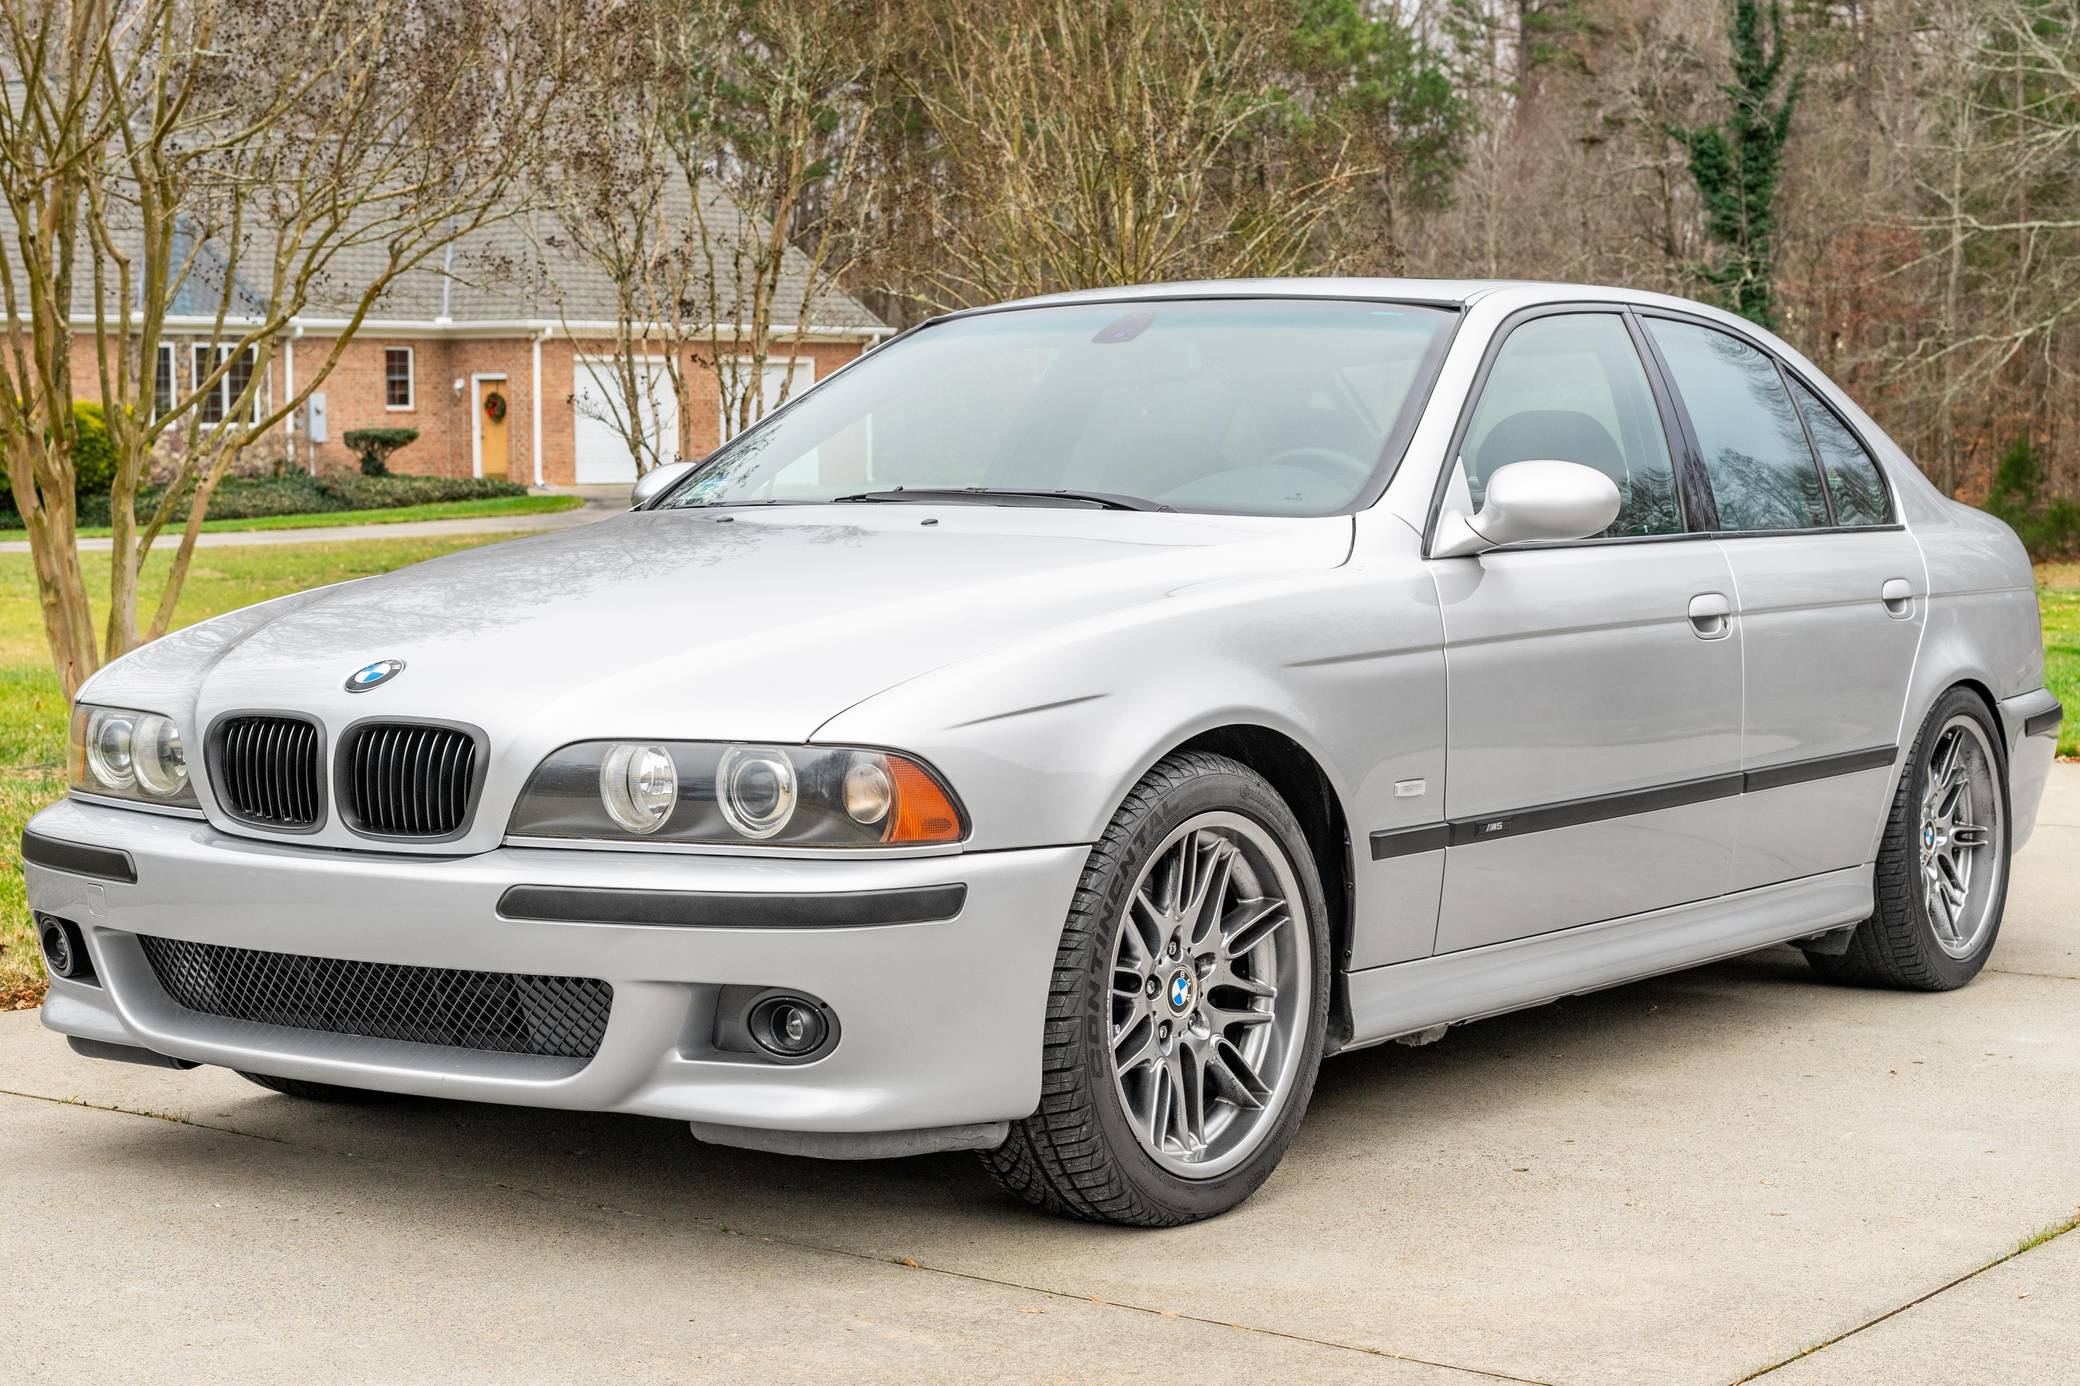 2000 BMW M5 ( E39 ) - Free high resolution car images